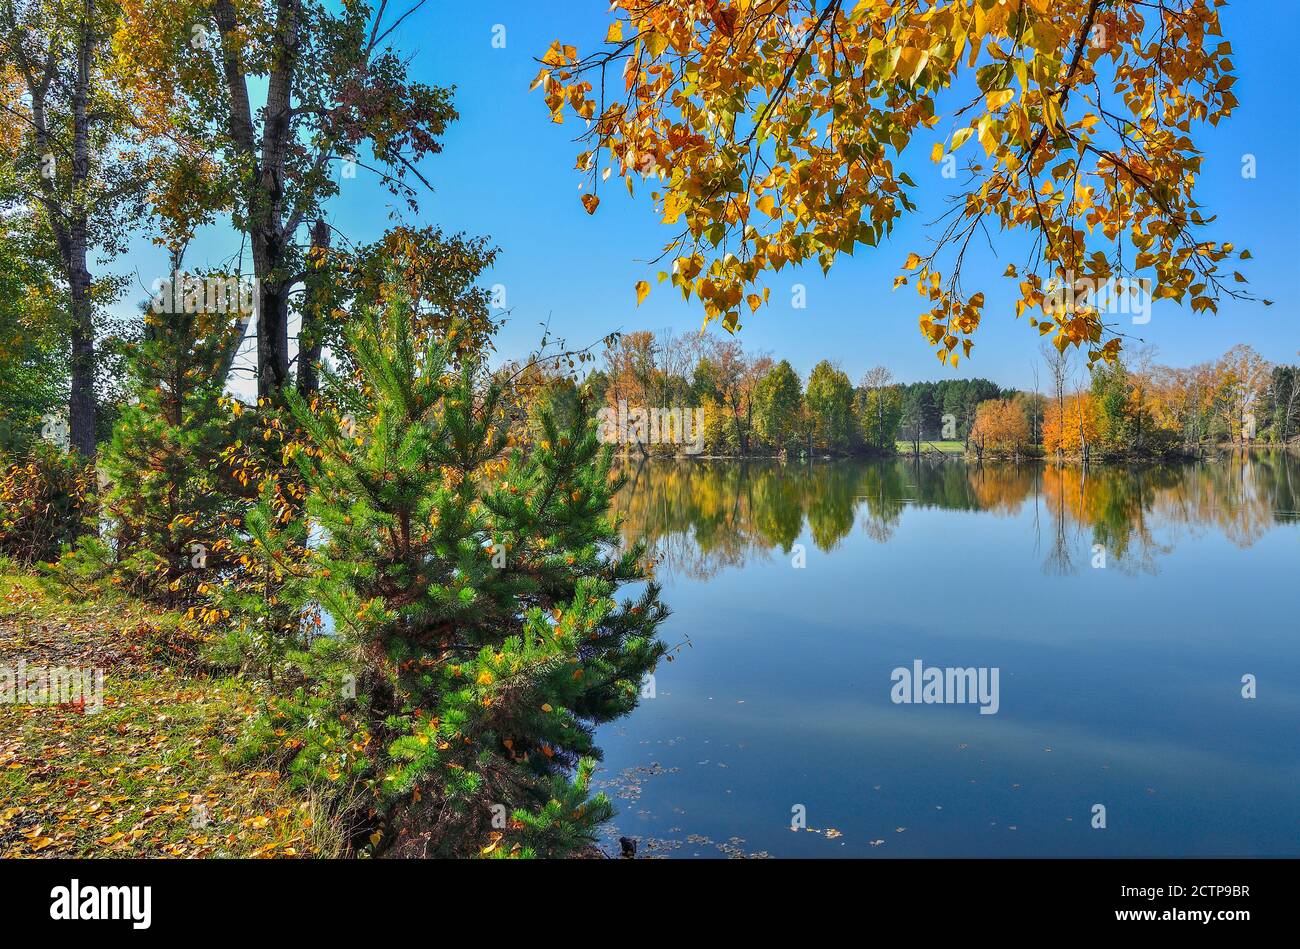 Septembre ensoleillé chaud paysage sur la rive du lac. Ciel bleu et feuillage doré d'arbres se reflétant dans la surface de l'eau - beauté de l'automne Banque D'Images